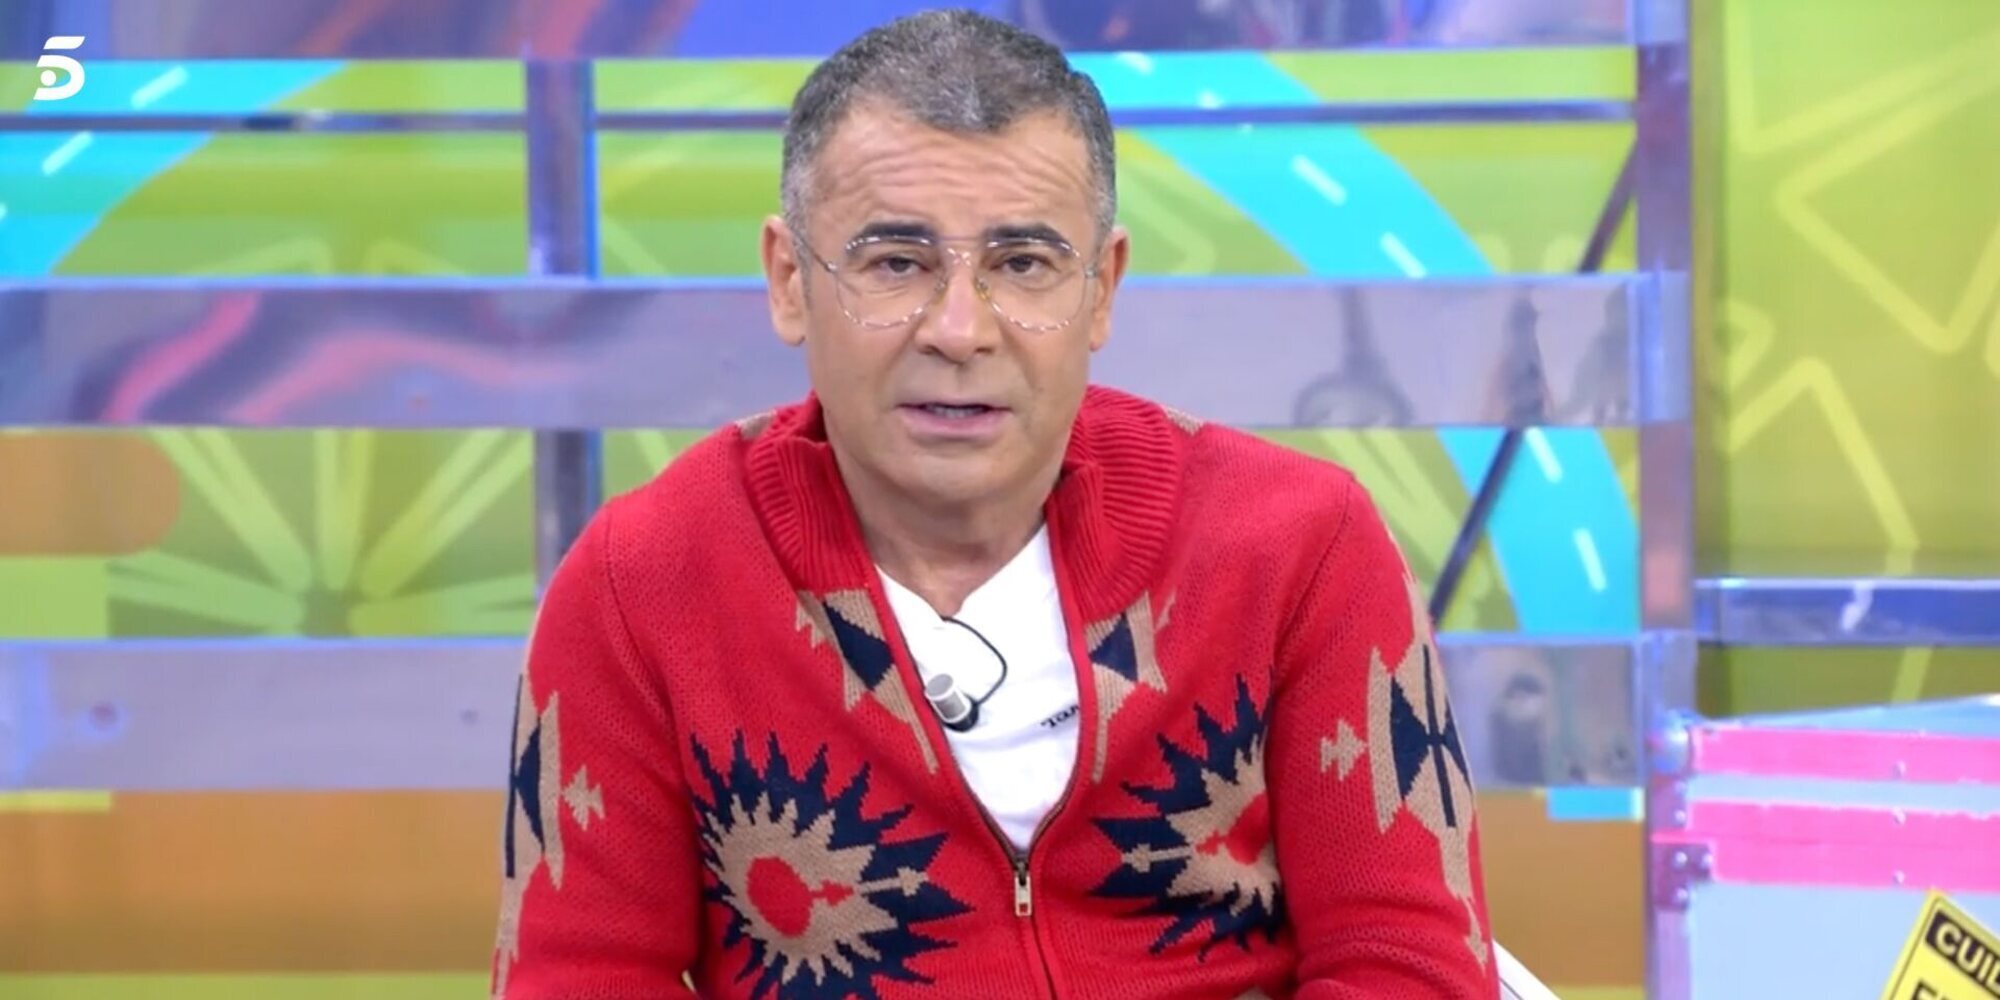 Jorge Javier desmiente que vaya a dejar Telecinco: "De aquí no me van a echar ni con agua caliente"